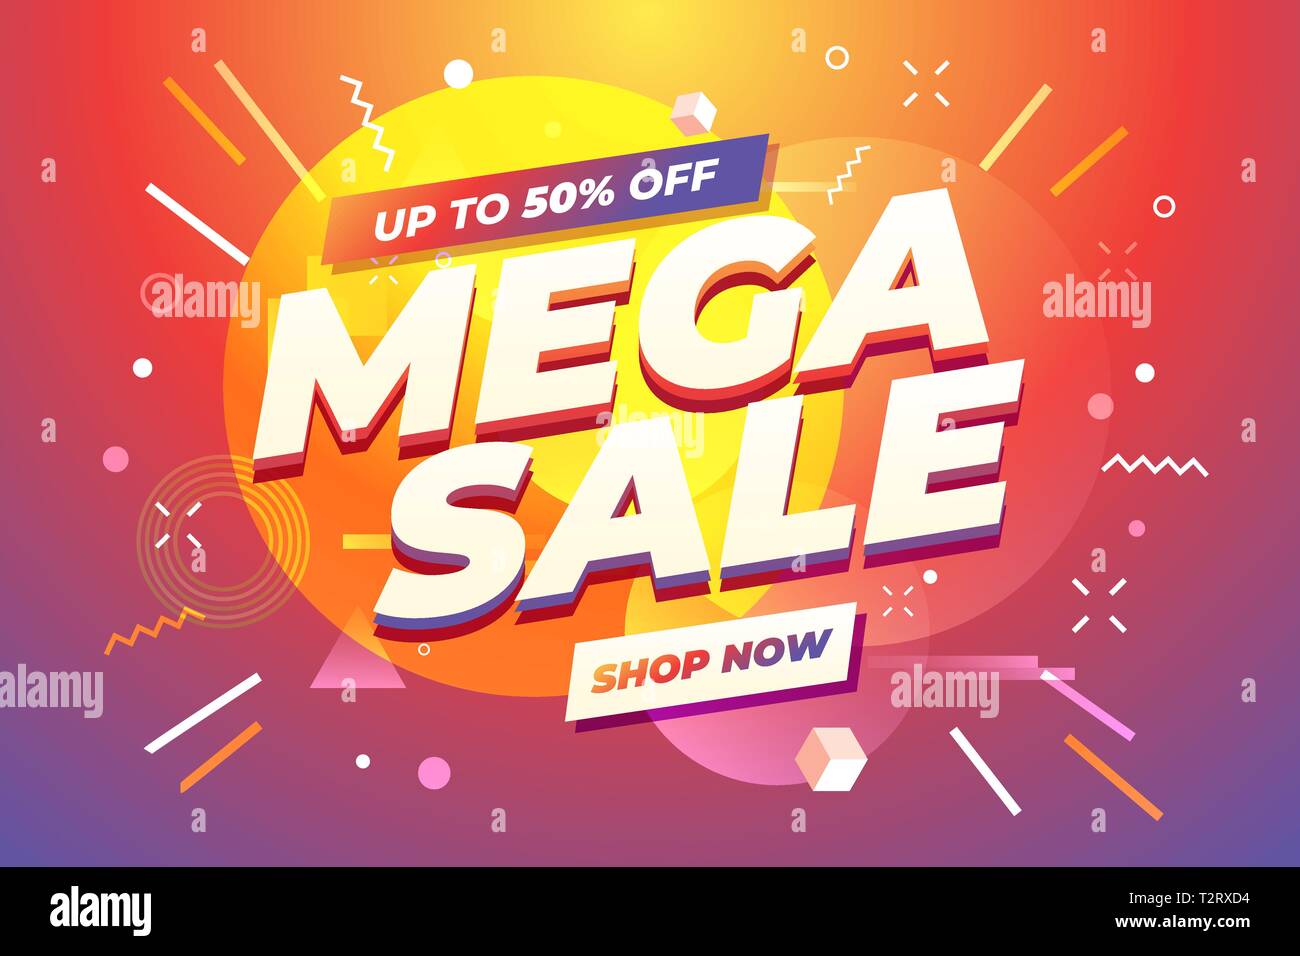 Eerlijkheid kalender ongeluk Mega Sale banner template design, Big sale special offer Stock Vector Image  & Art - Alamy